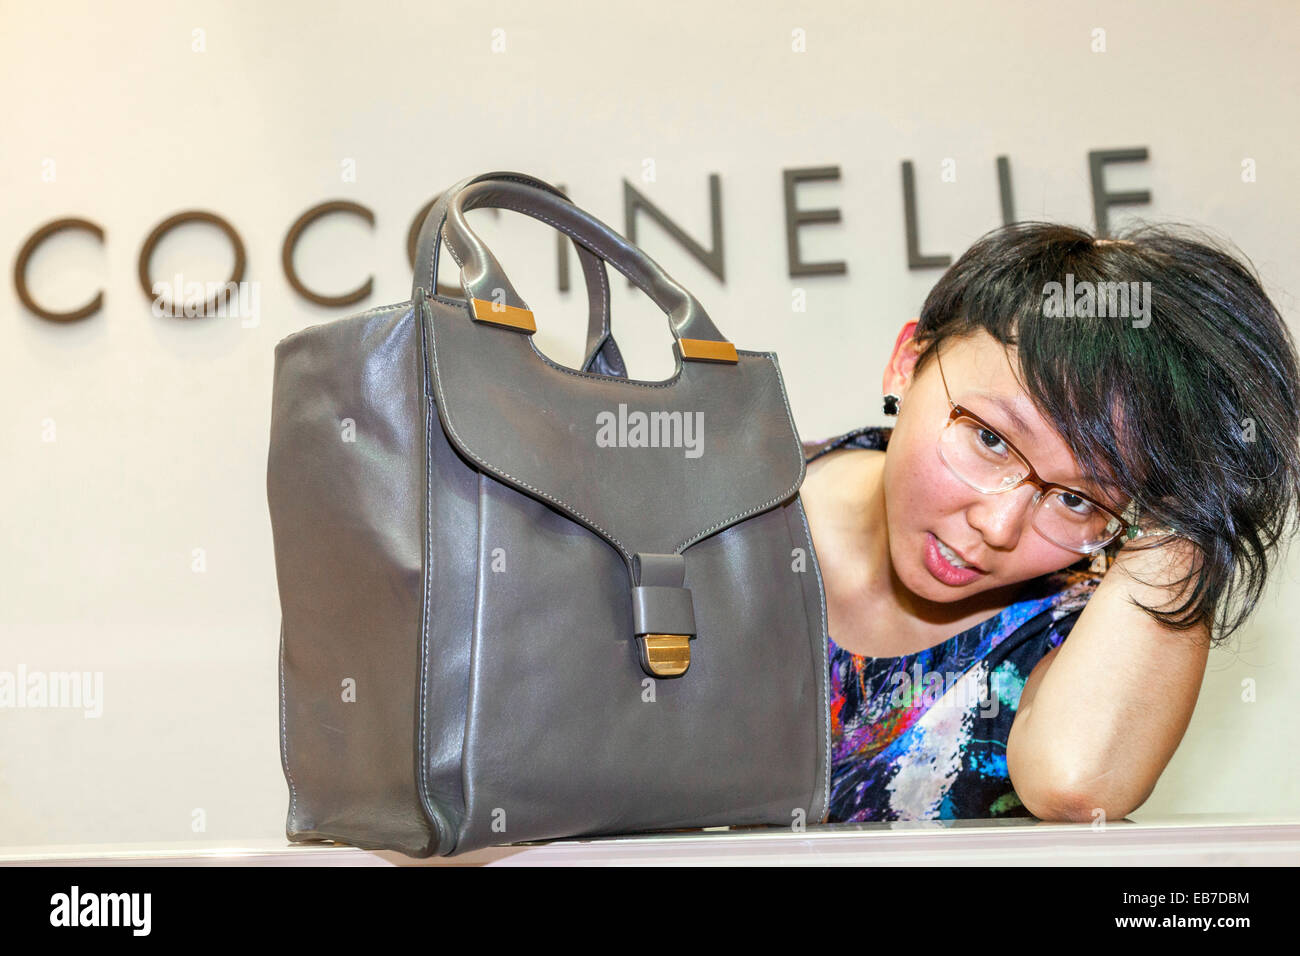 Junge Asiatin mit einer Handtasche Coccinelle Tschechische Stockfoto